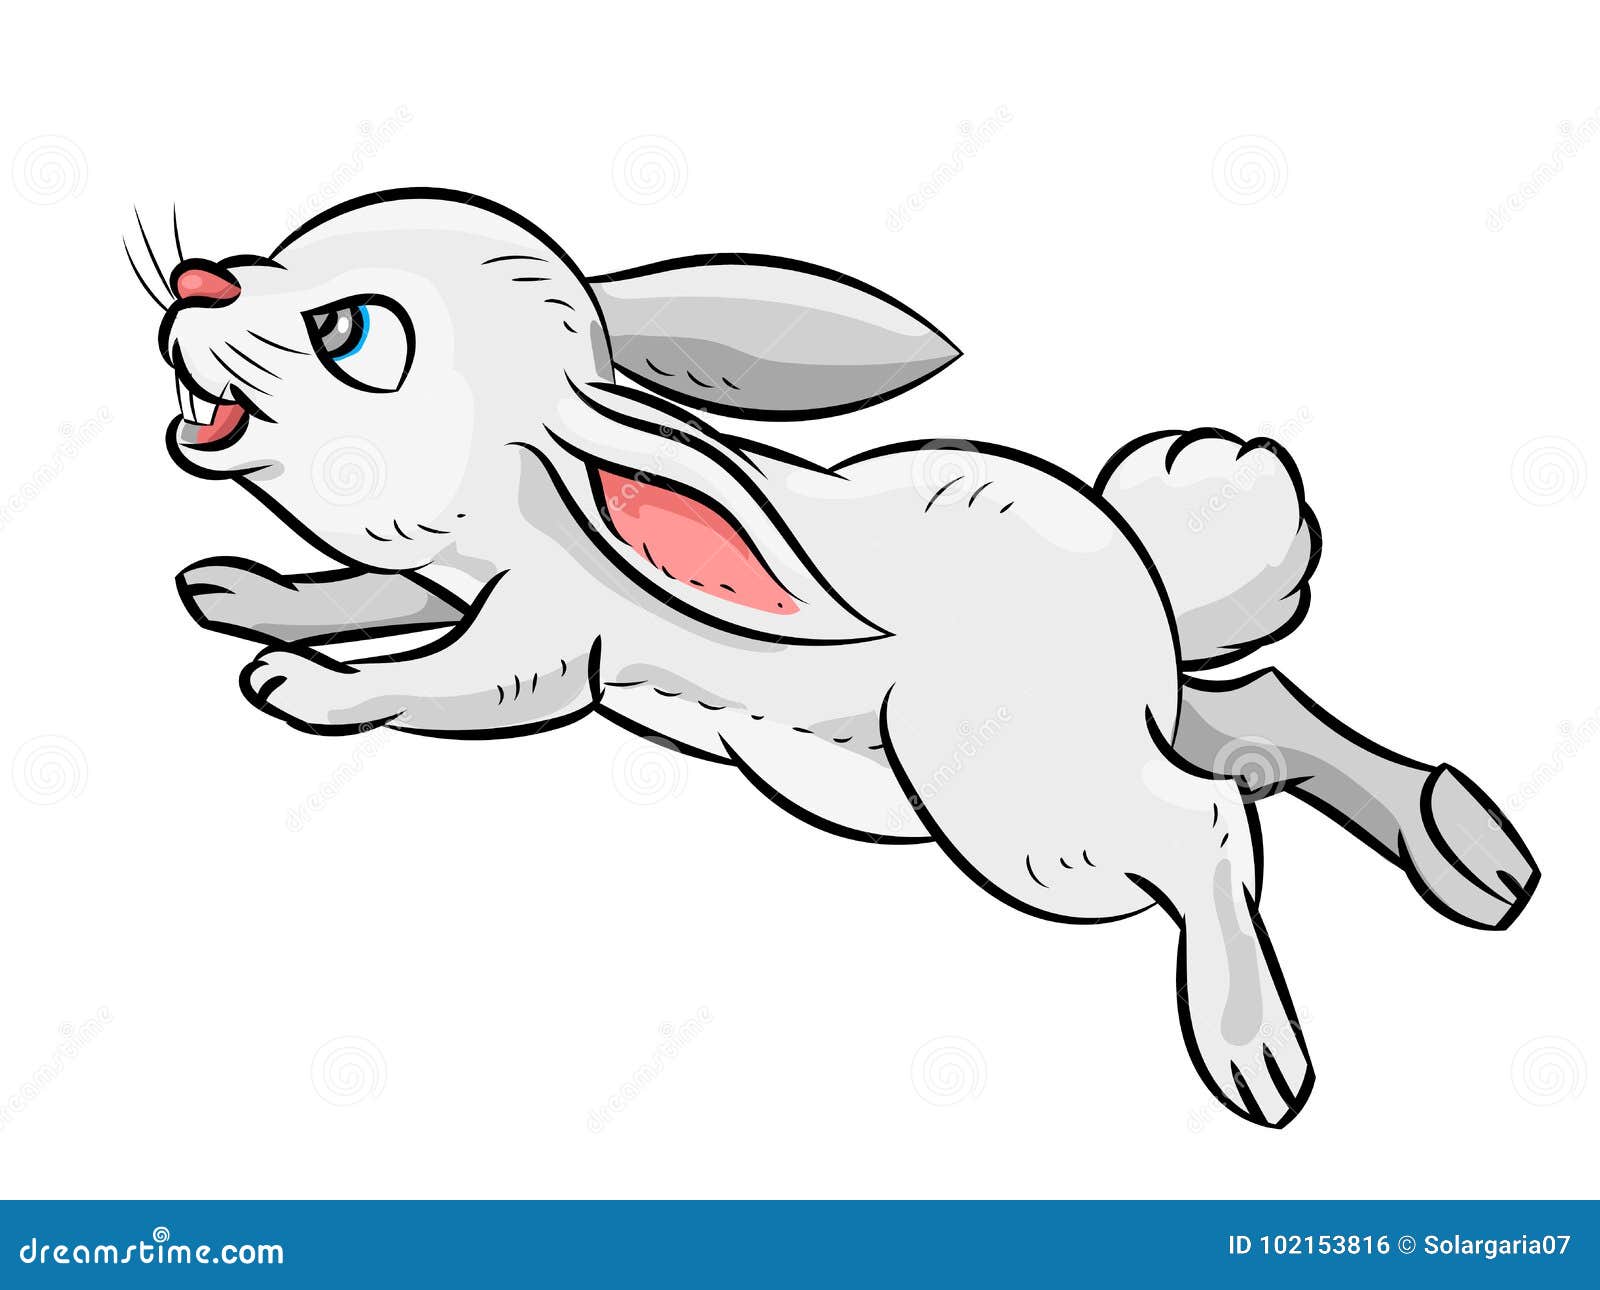 Cartoon bunny hopping